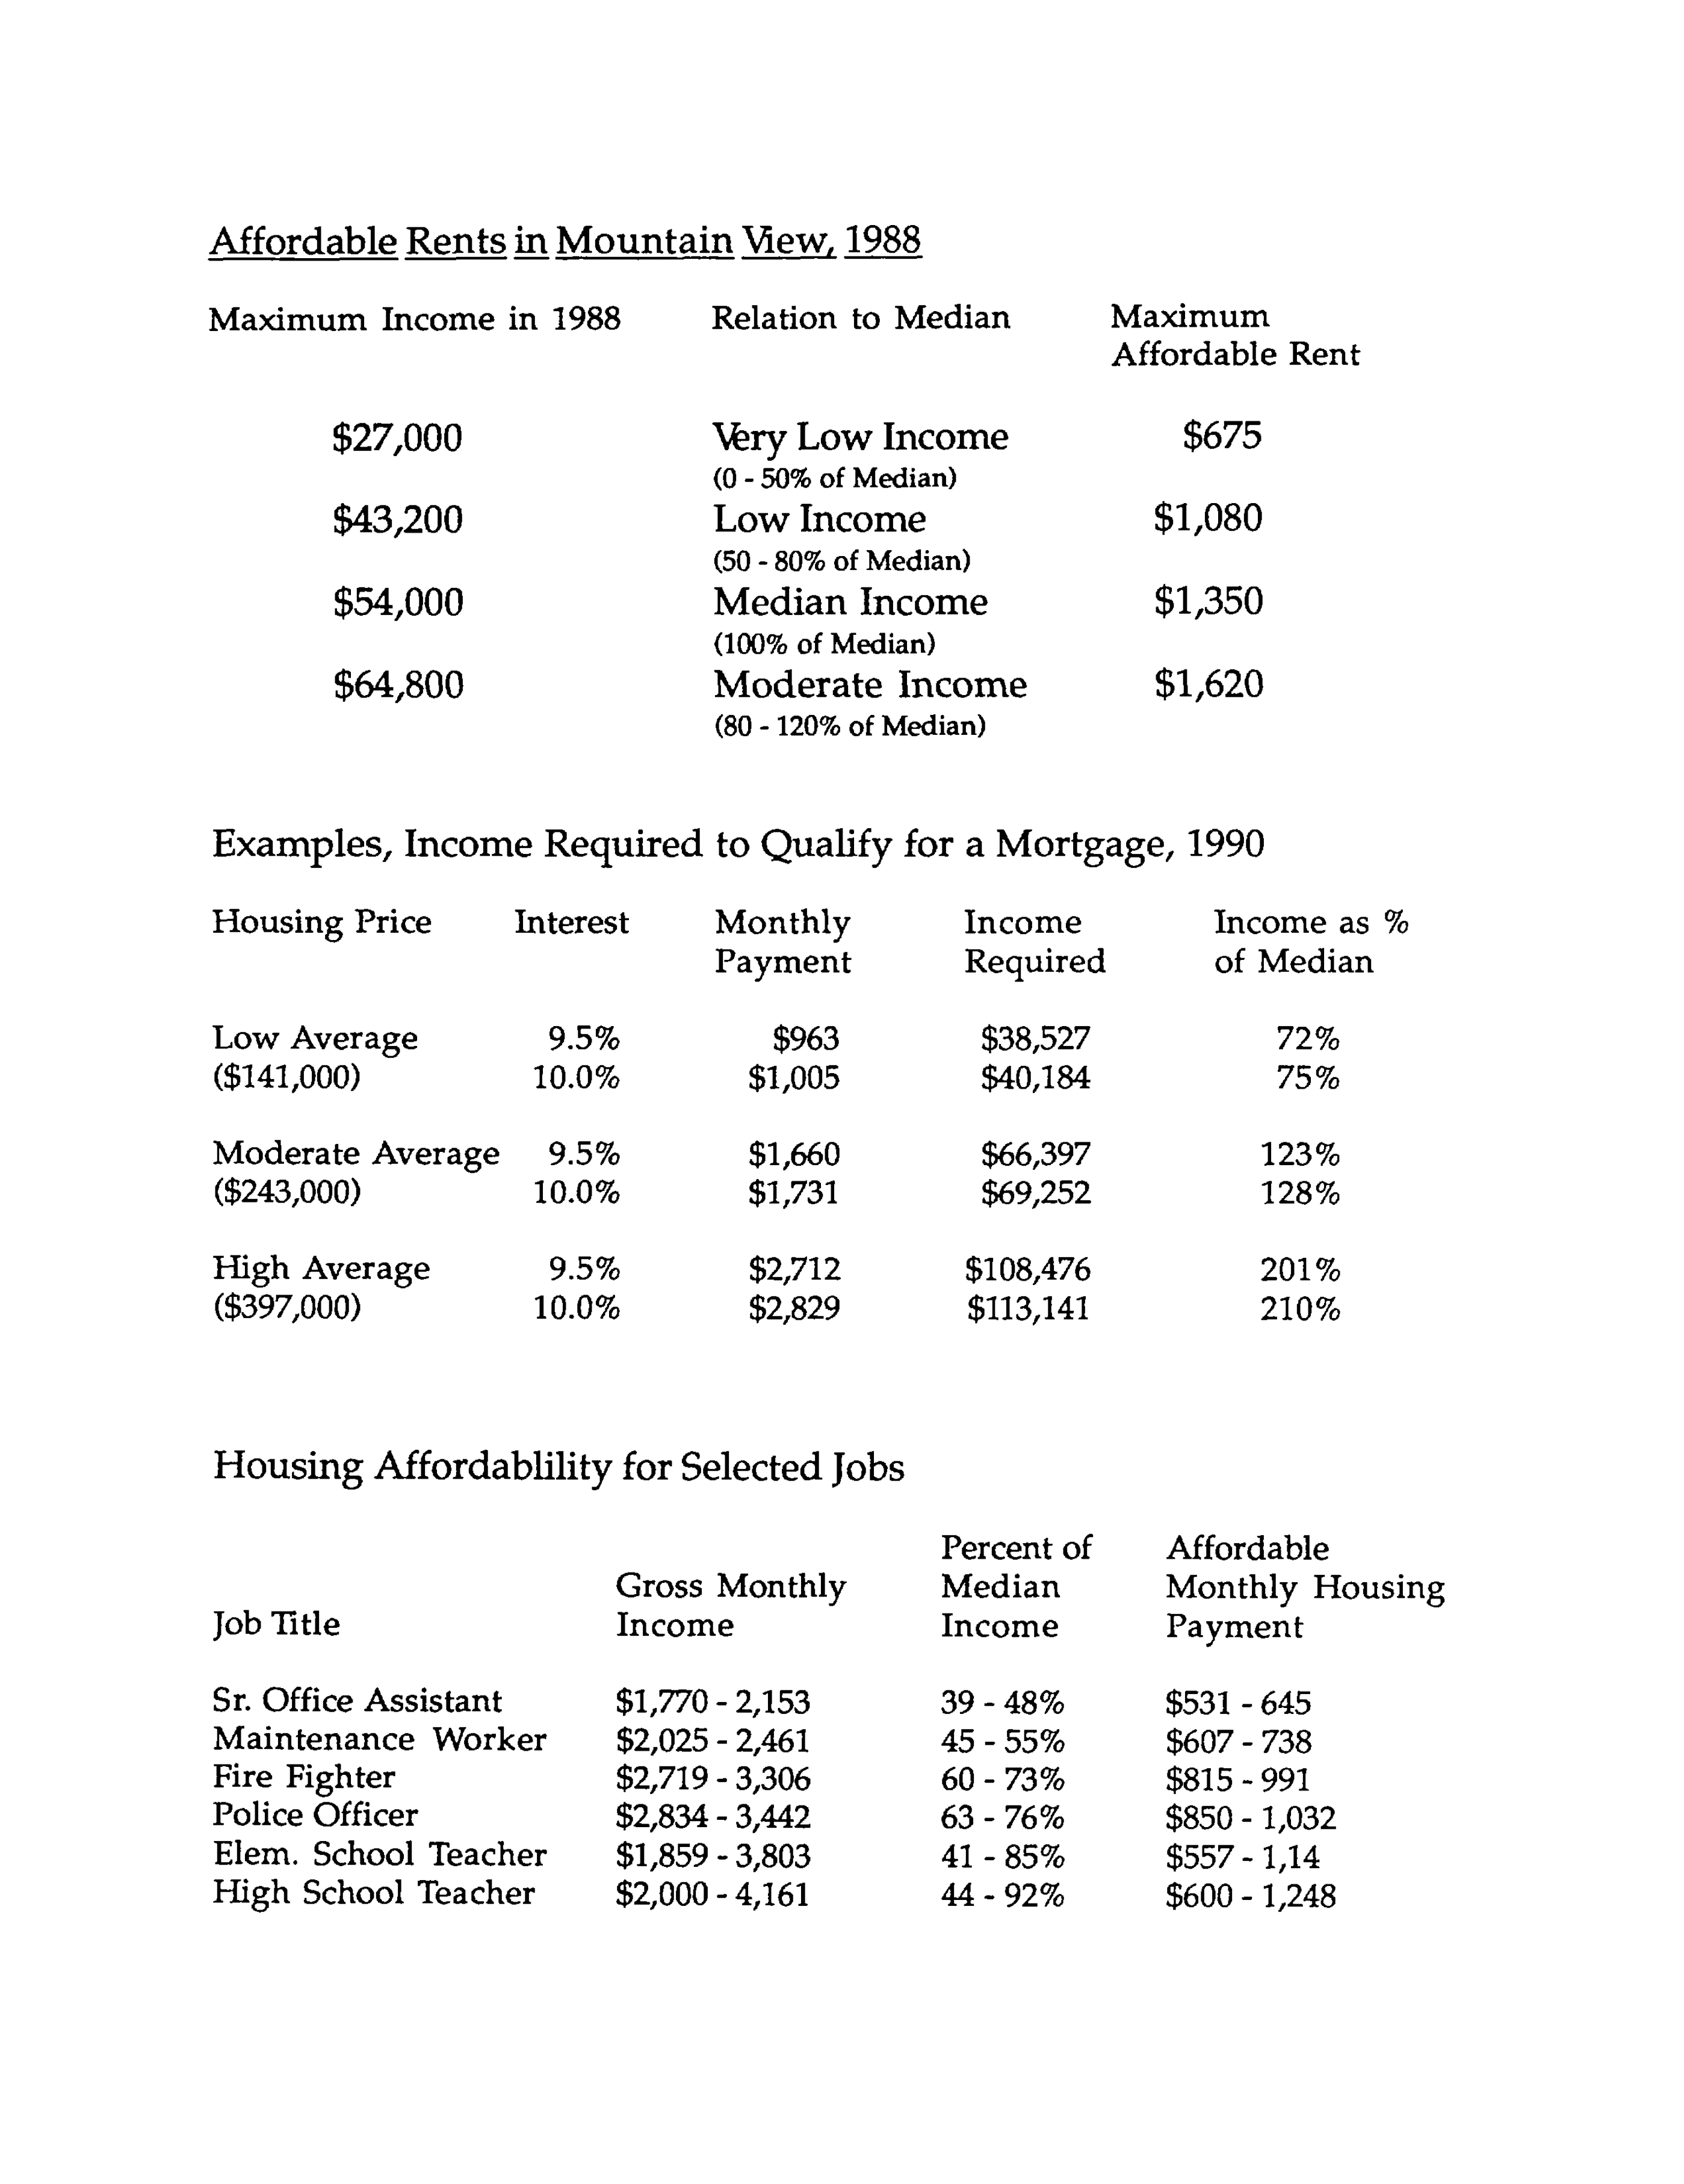 Rents in MV in 1998